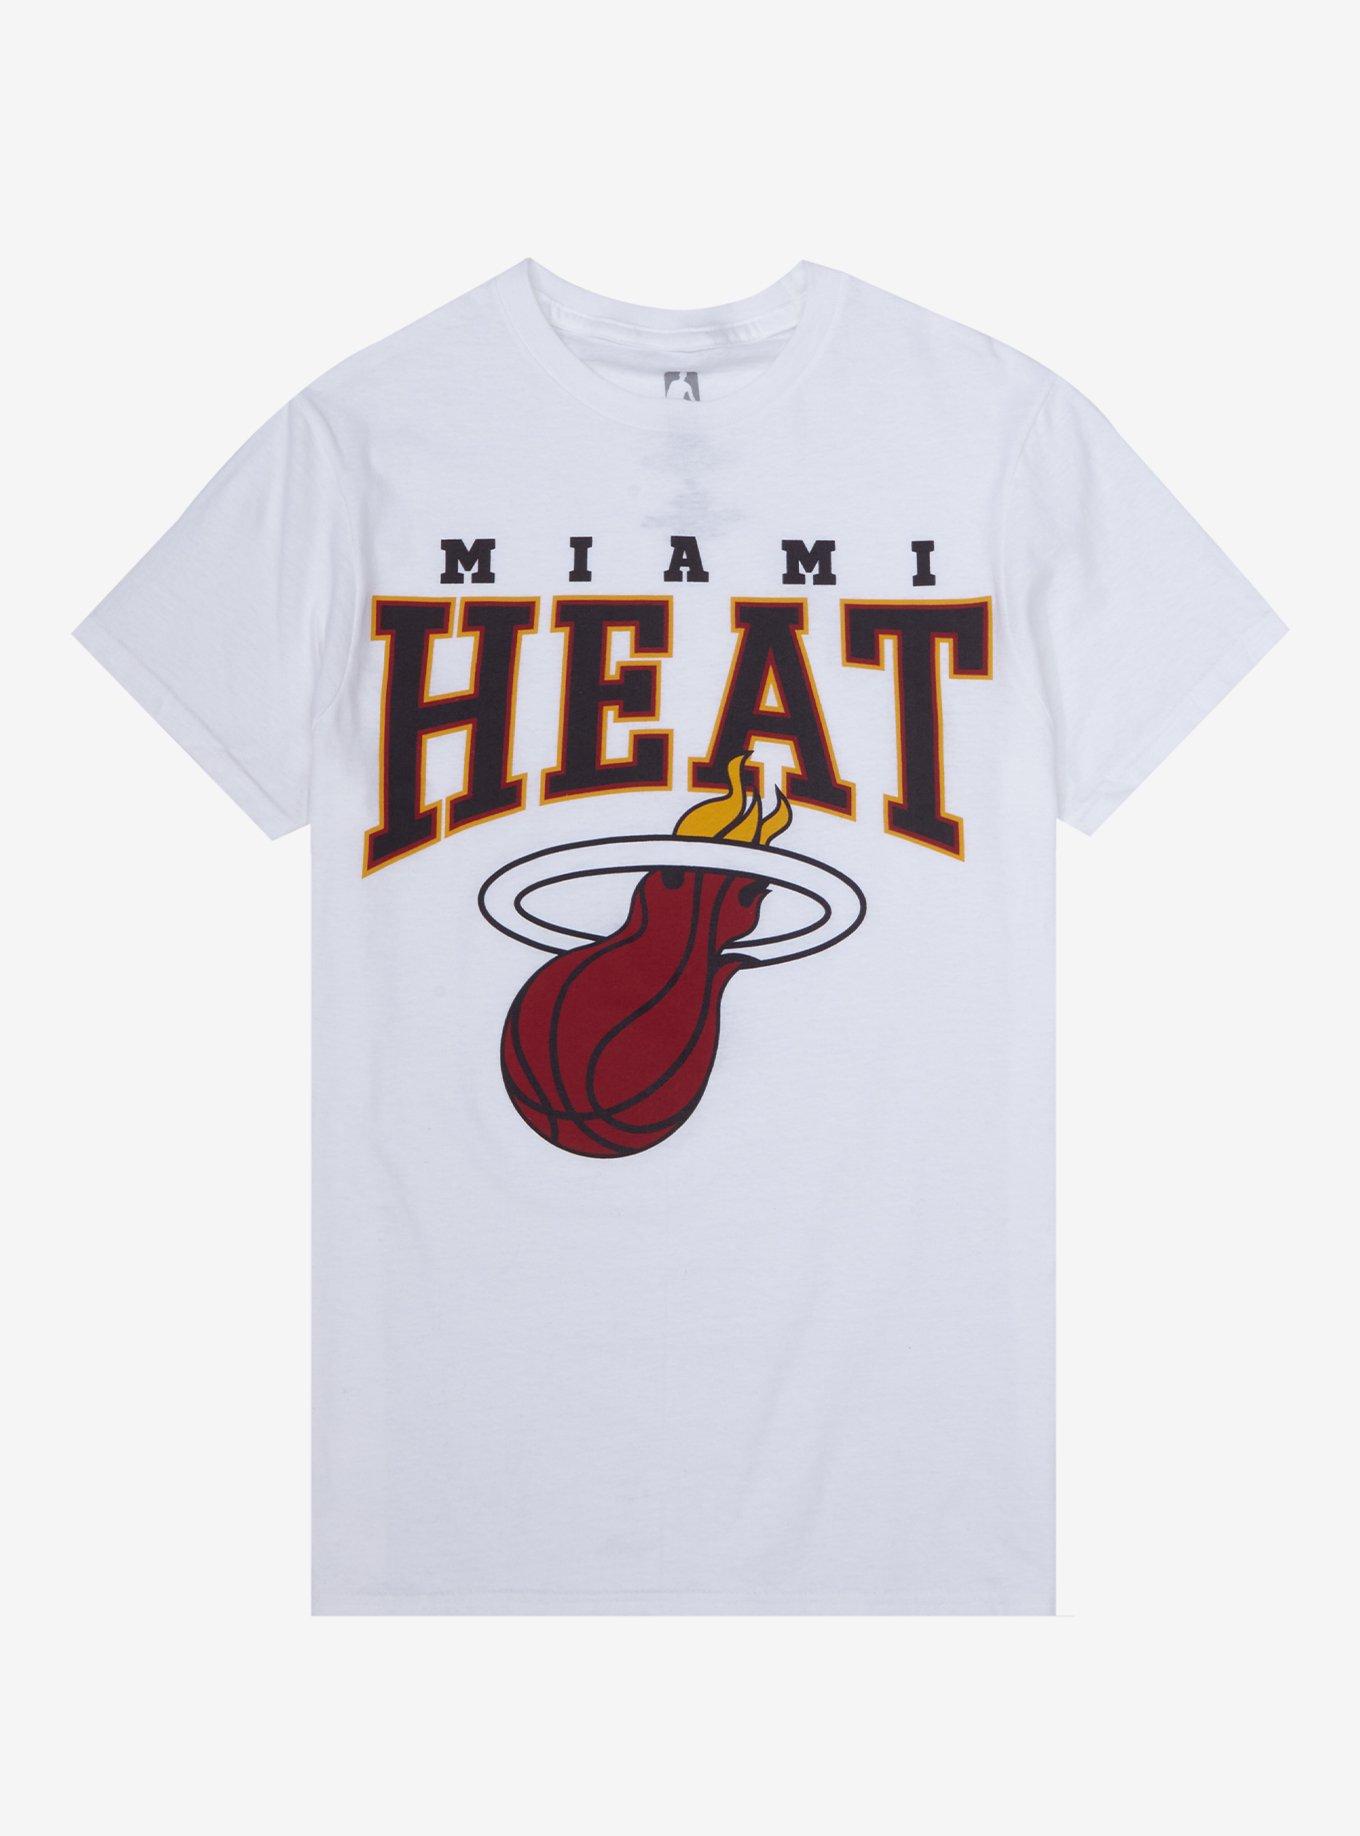 miami heat shirt for women